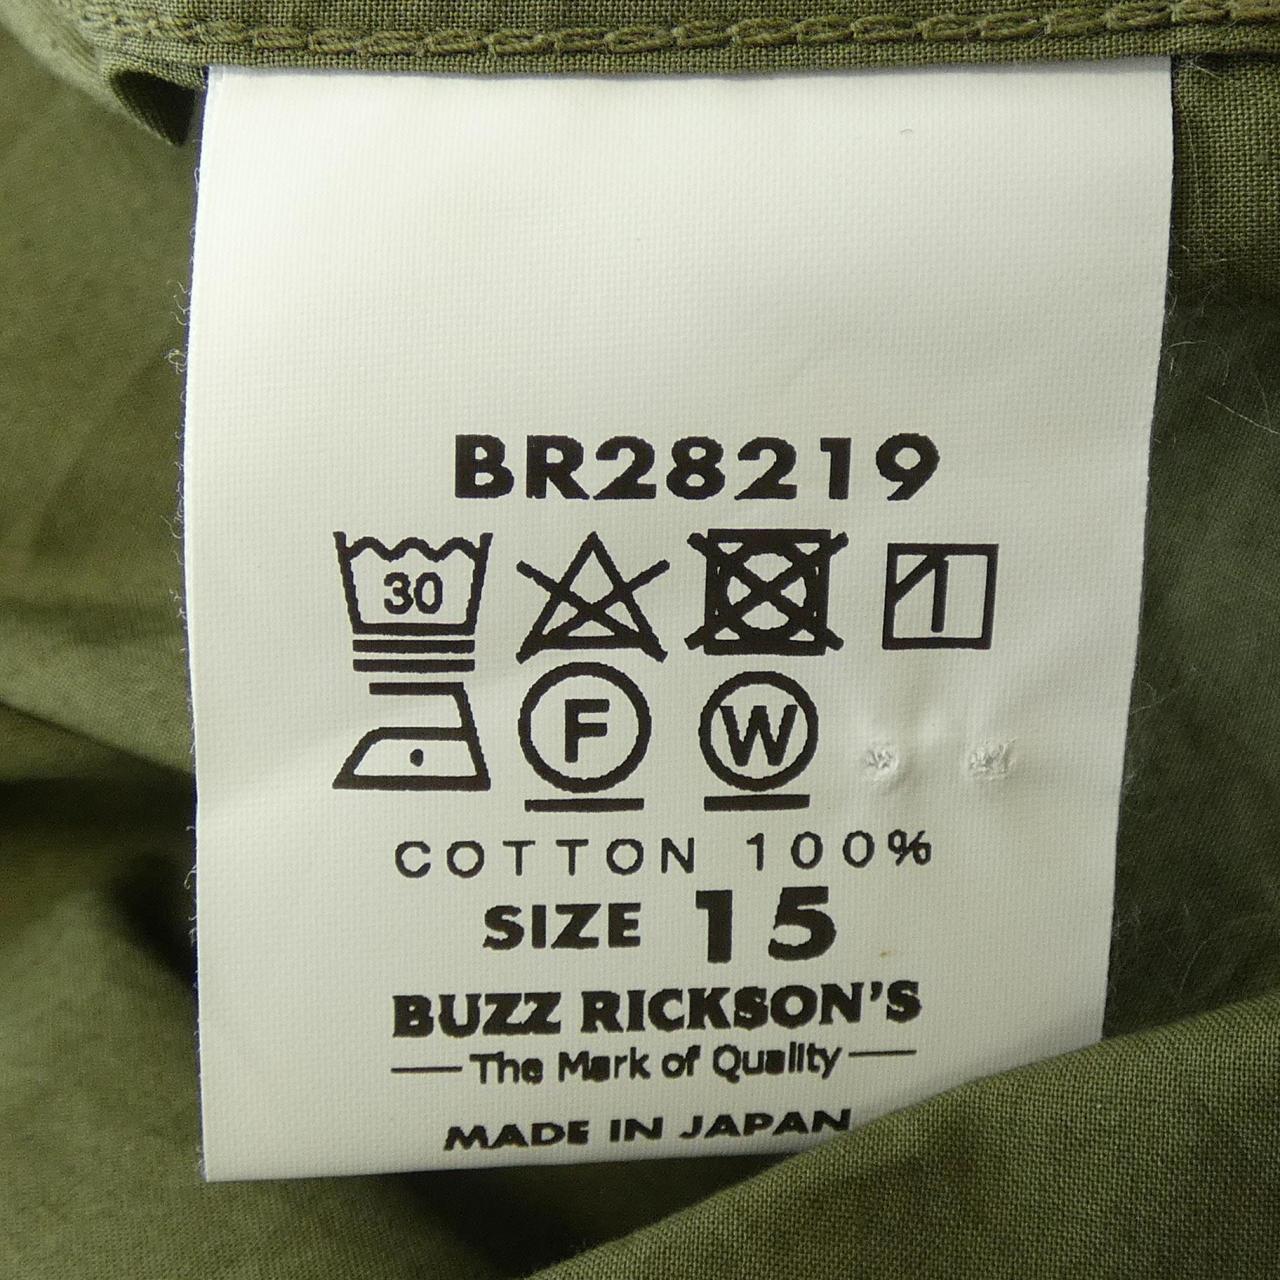 Buzz Rickson's BUZZ RICKSON'S shirt